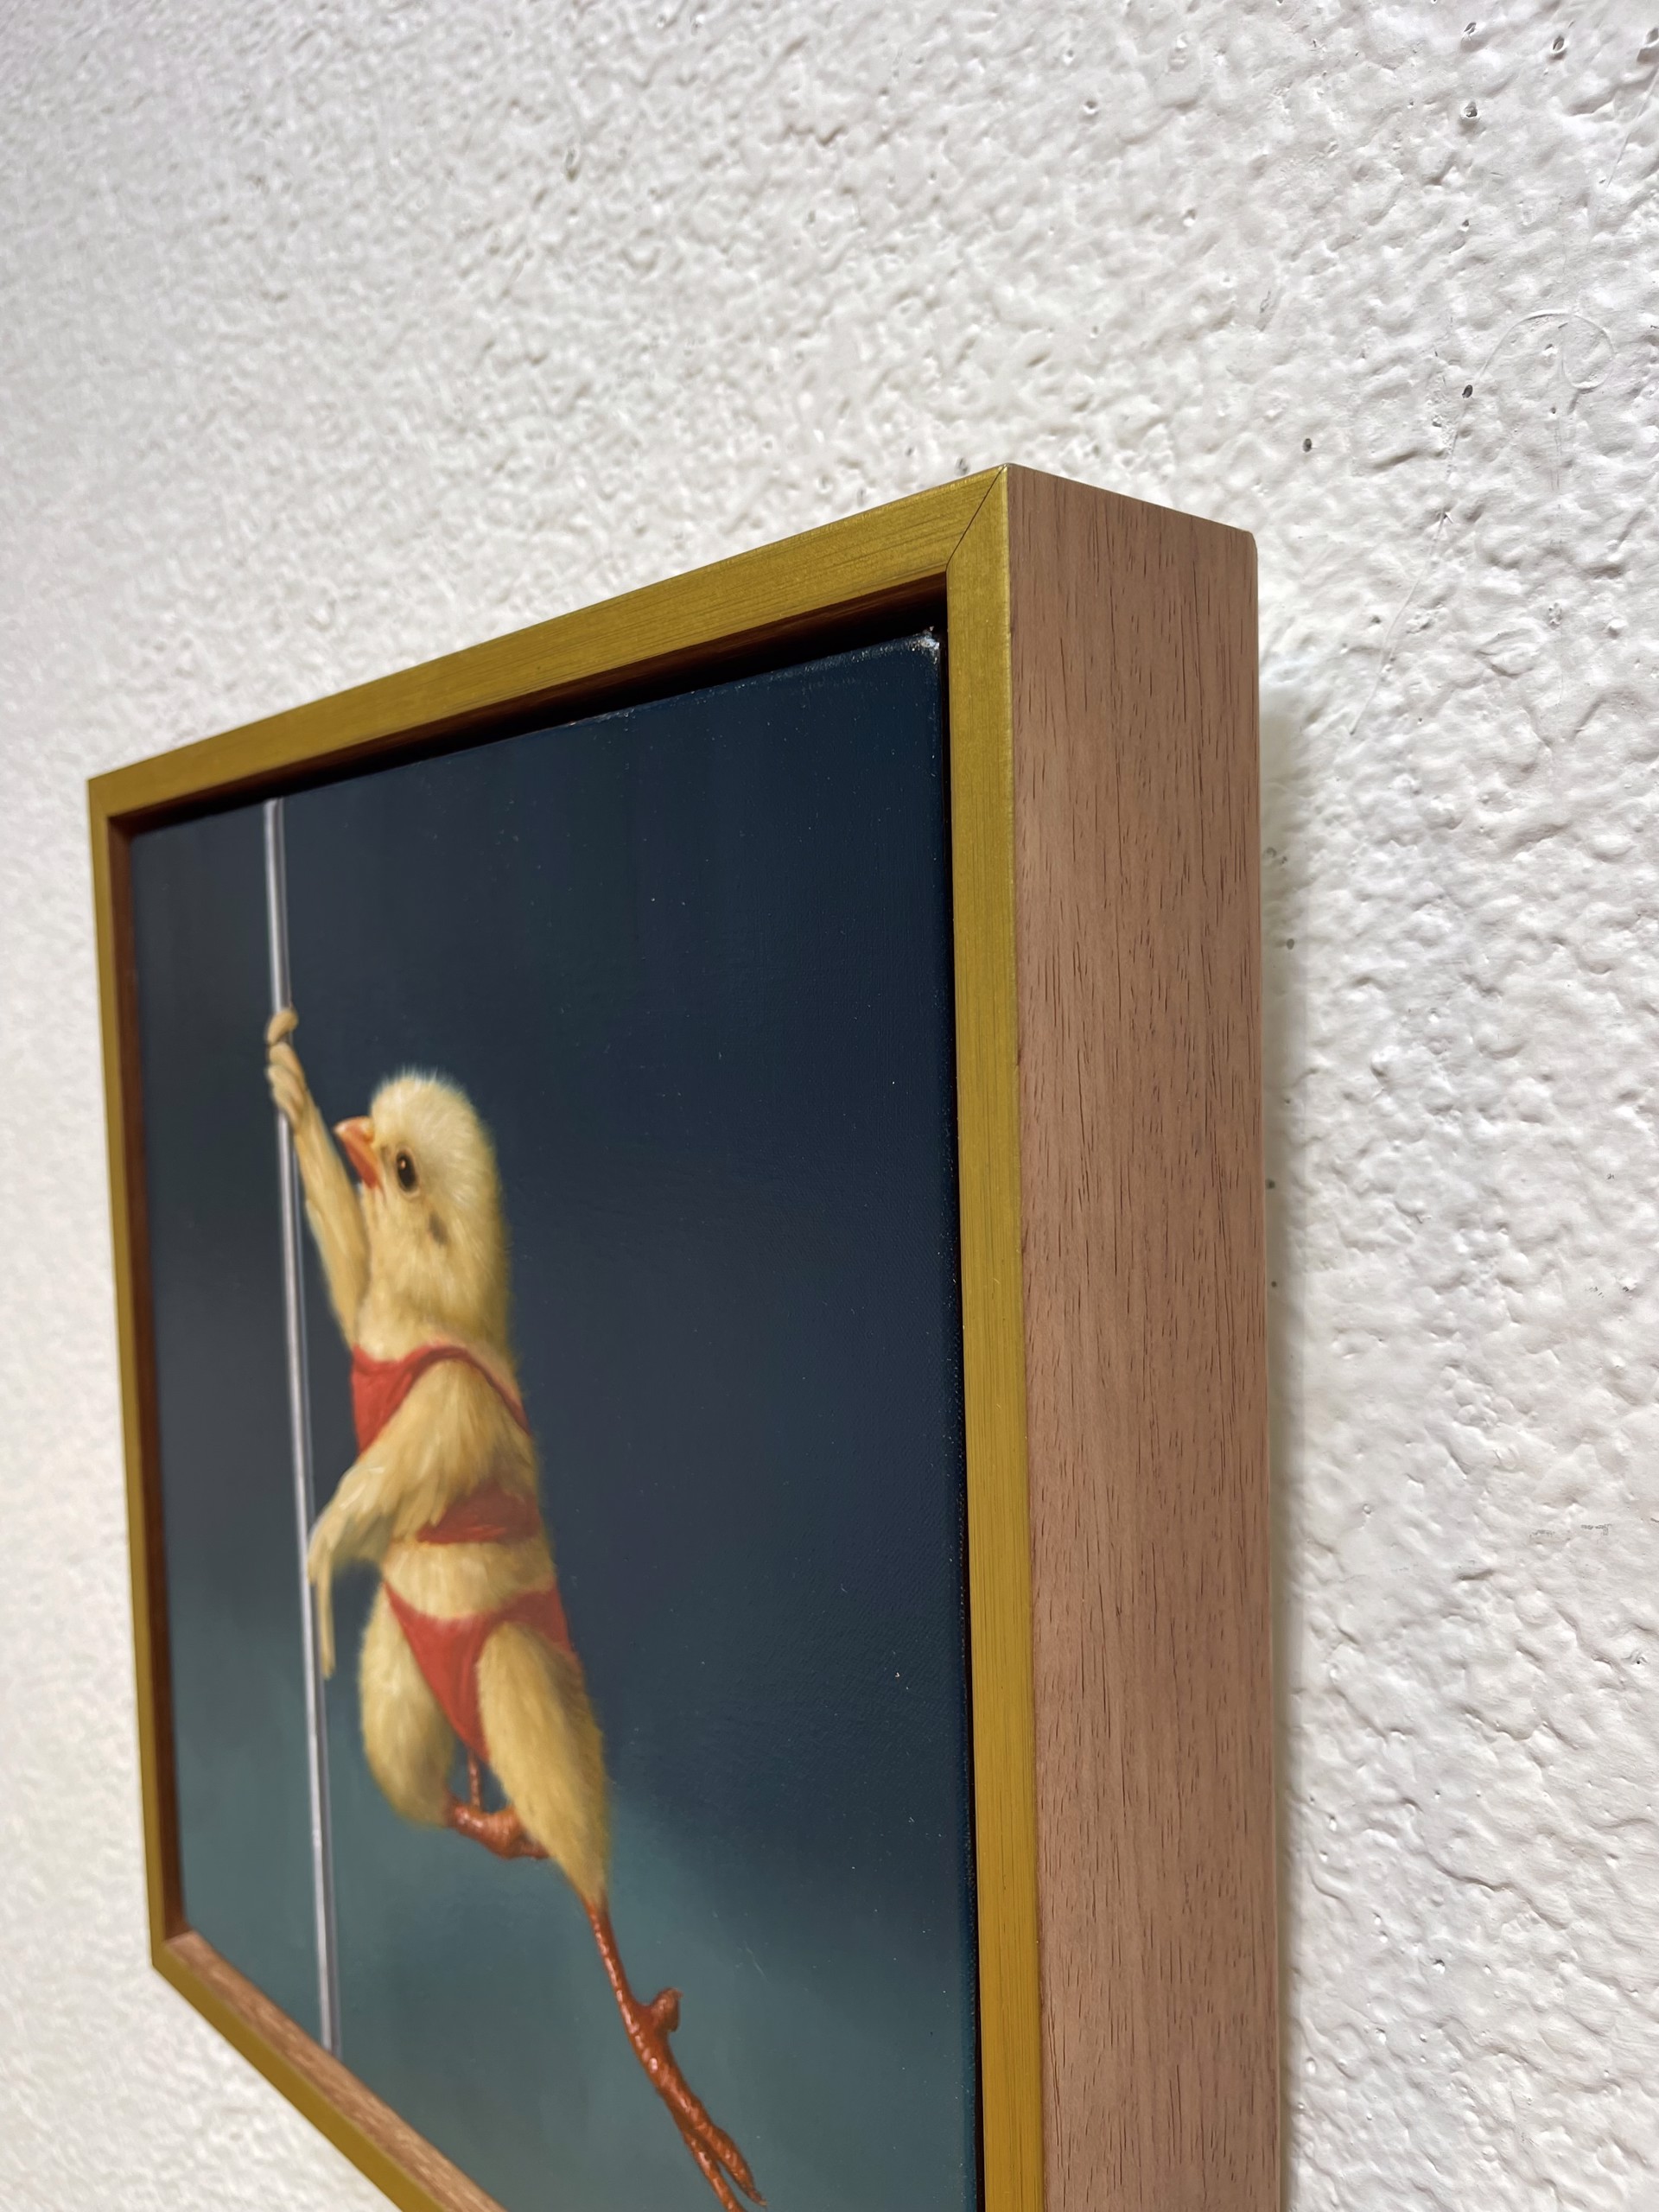 Pole Chick - Tinker Bell by Lucia Heffernan